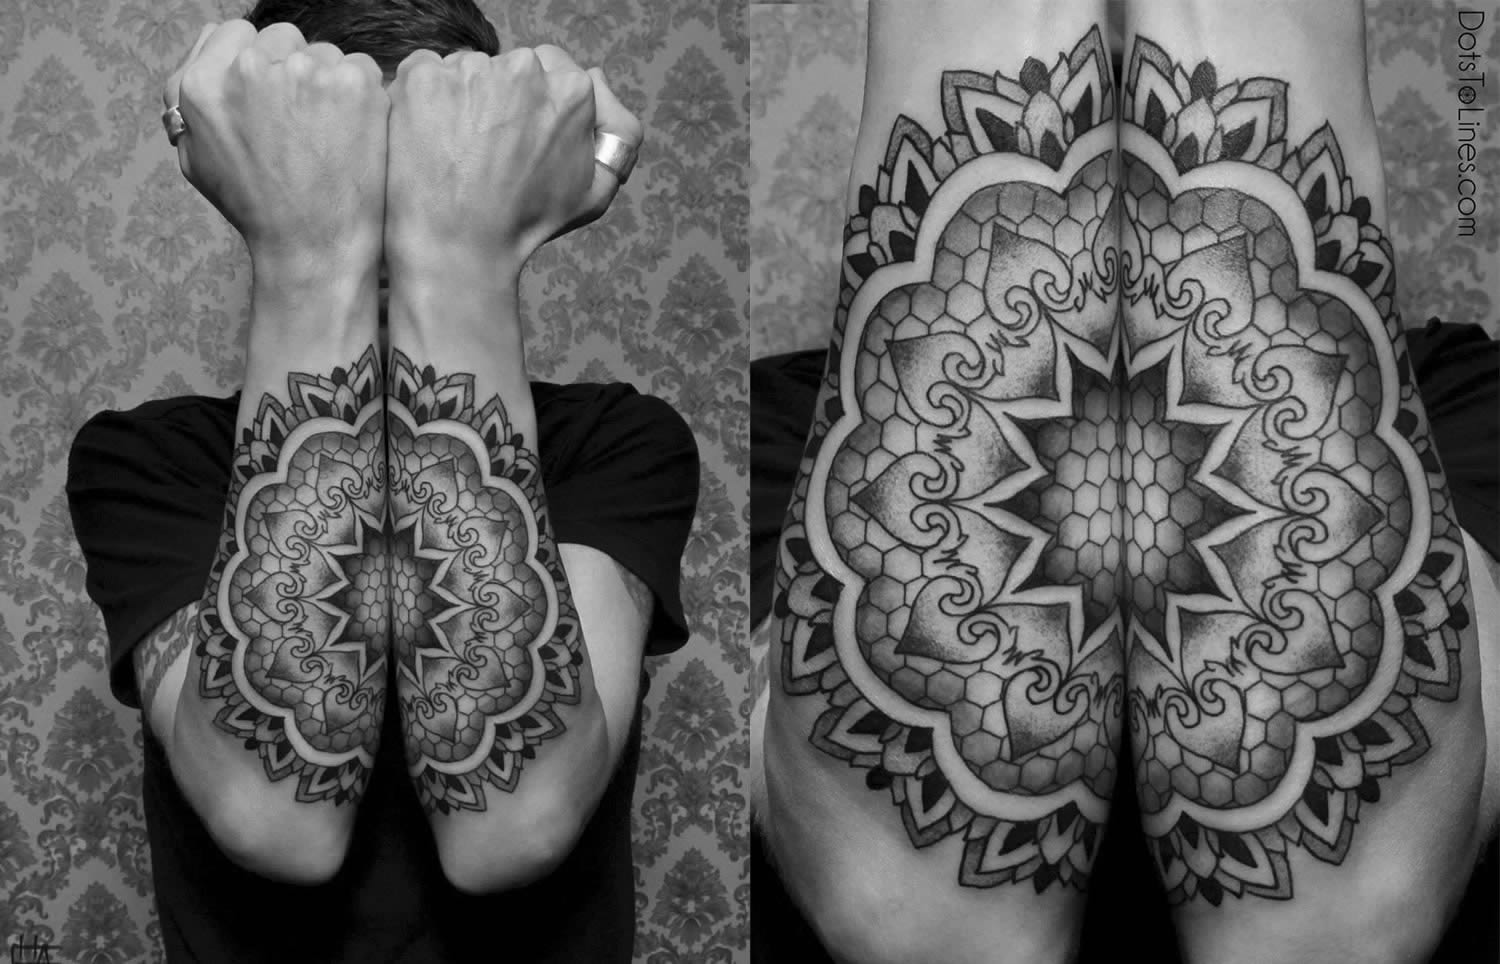 amazing tattoo on arm by by chaim machlev, 2014